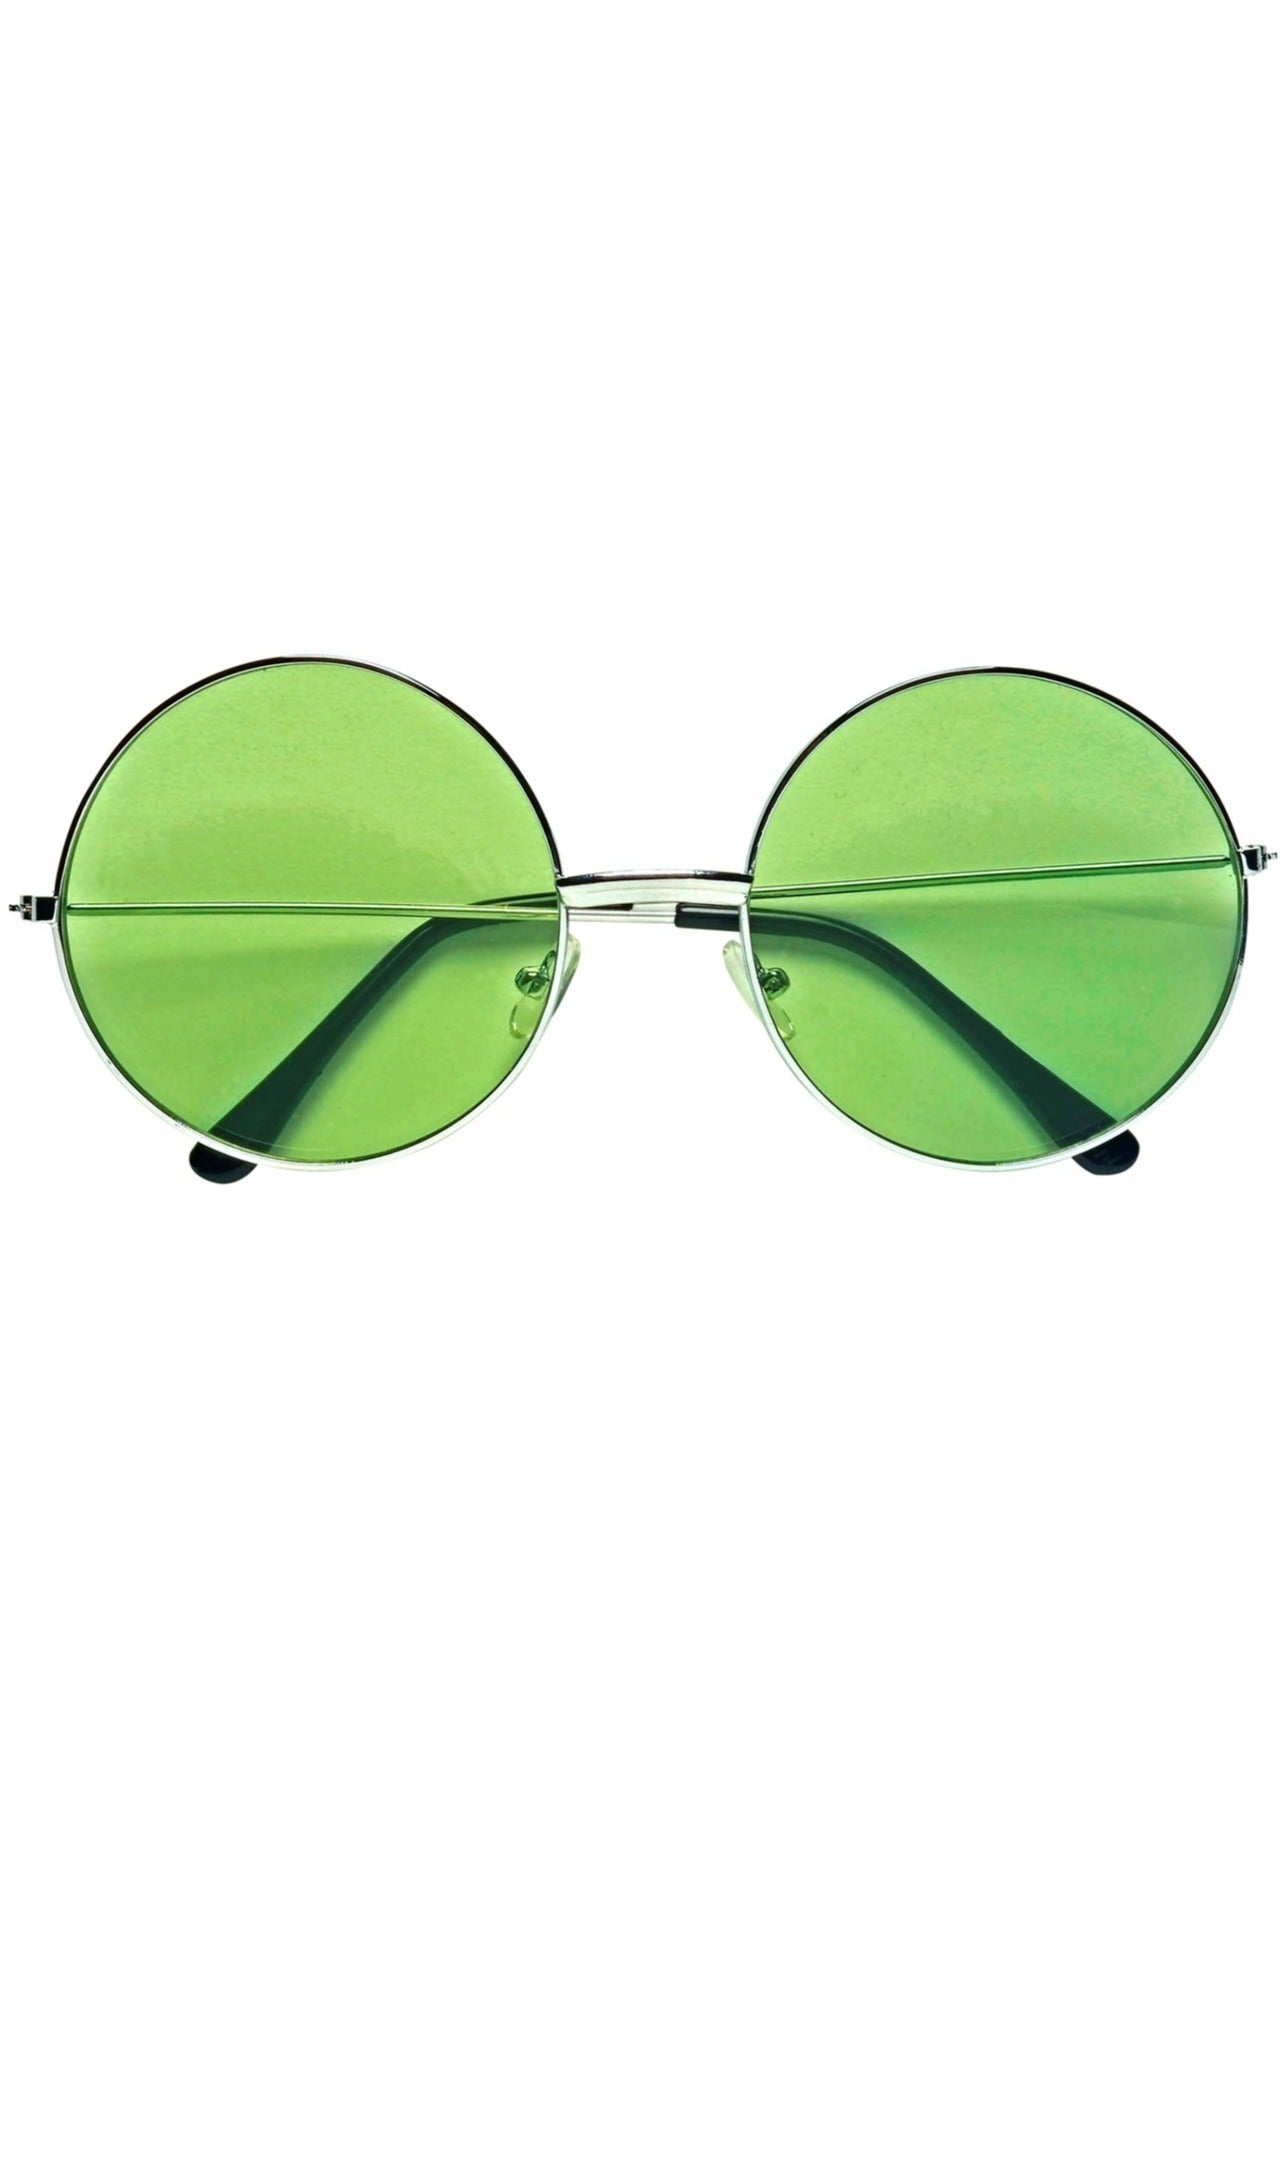 Große grüne runde Brille